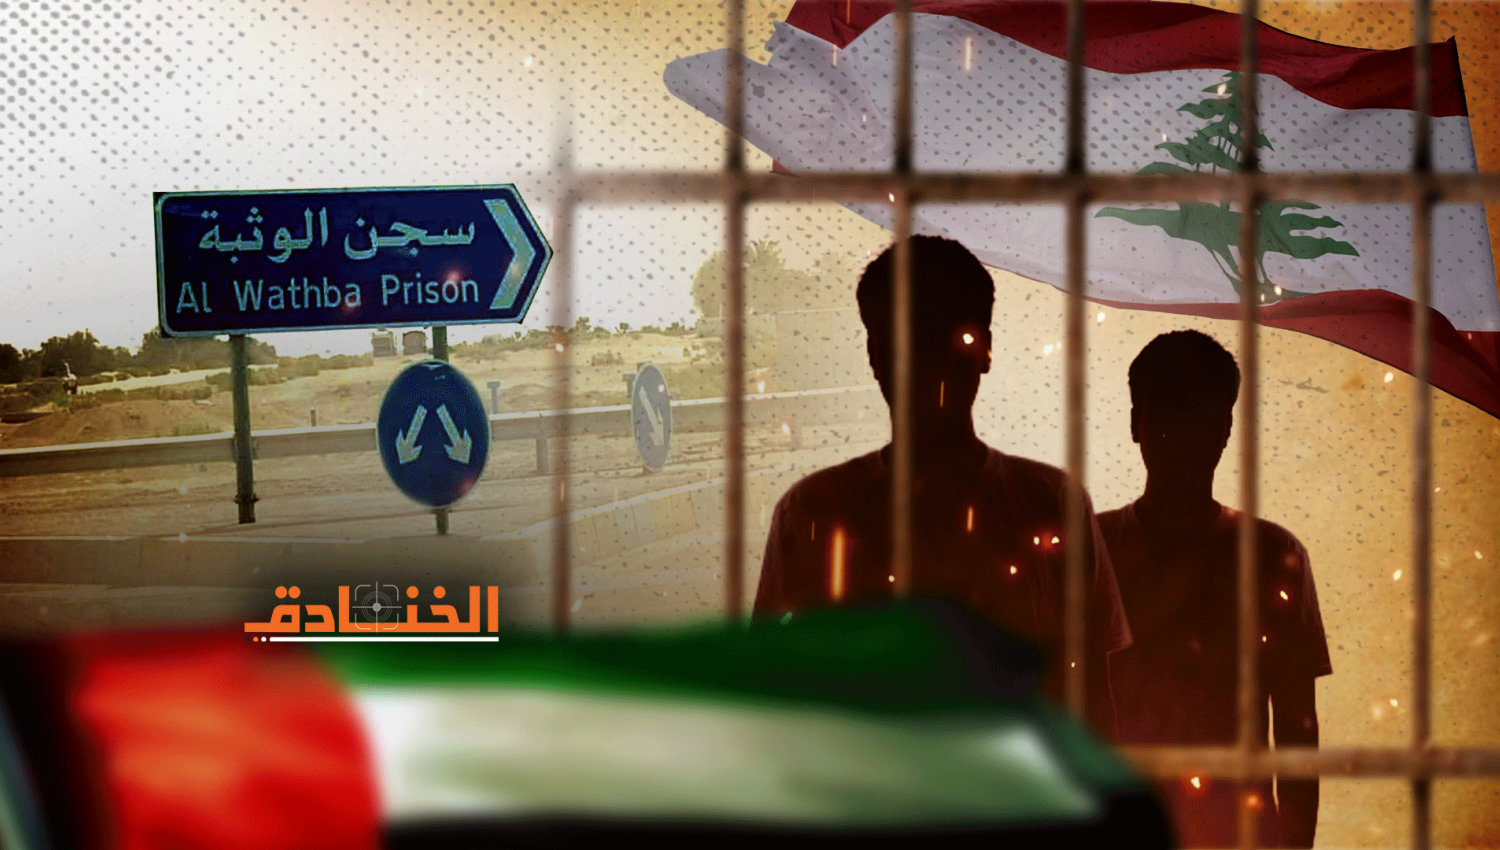 المعتقلون اللبنانيون: ظروف غامضة والدولة تتخلى عن مسؤوليتها!